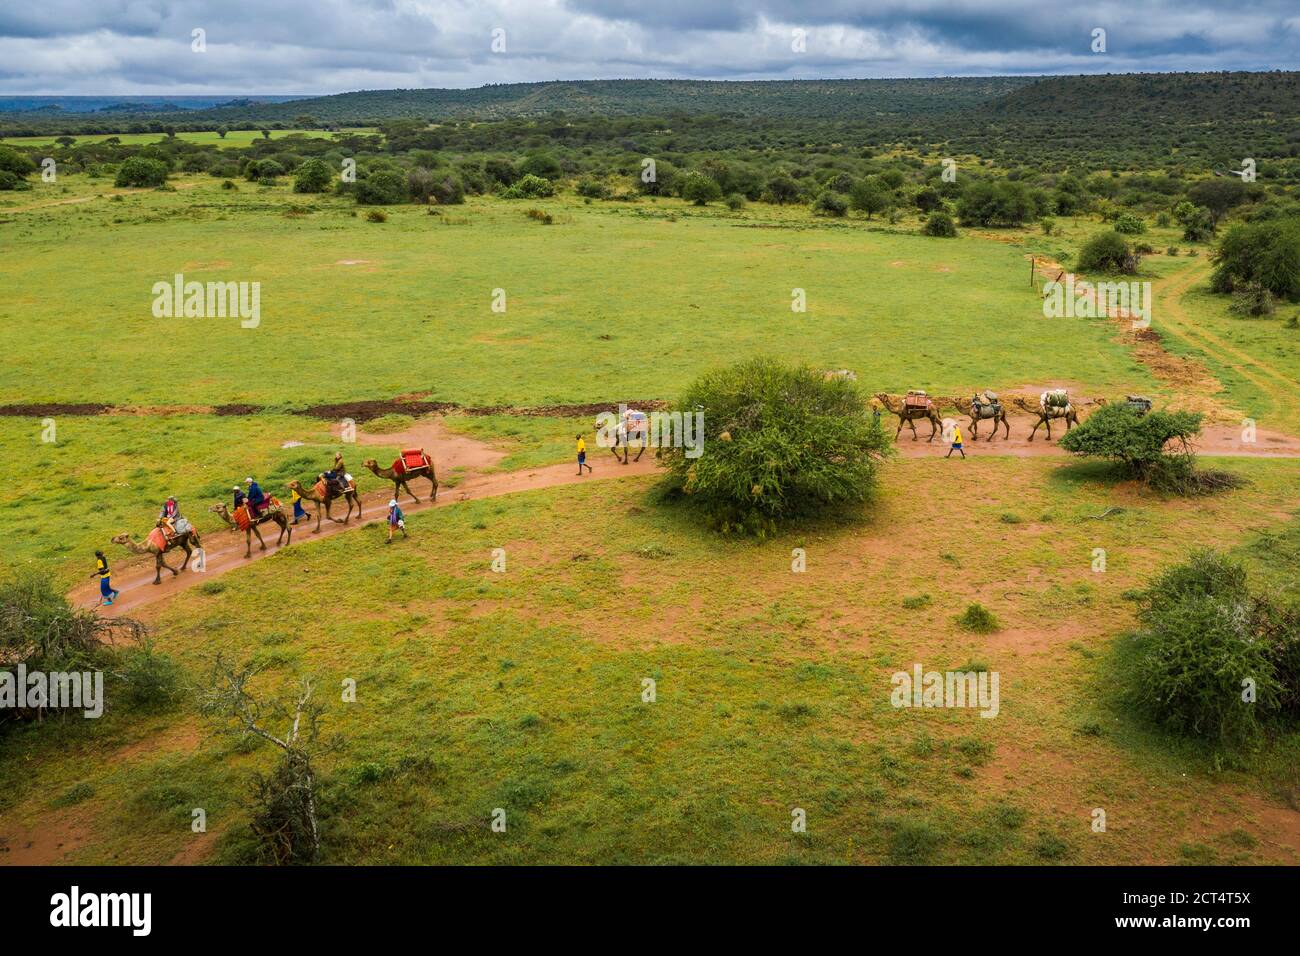 Camel safari at Sosian Ranch, Laikipia County, Kenya Stock Photo